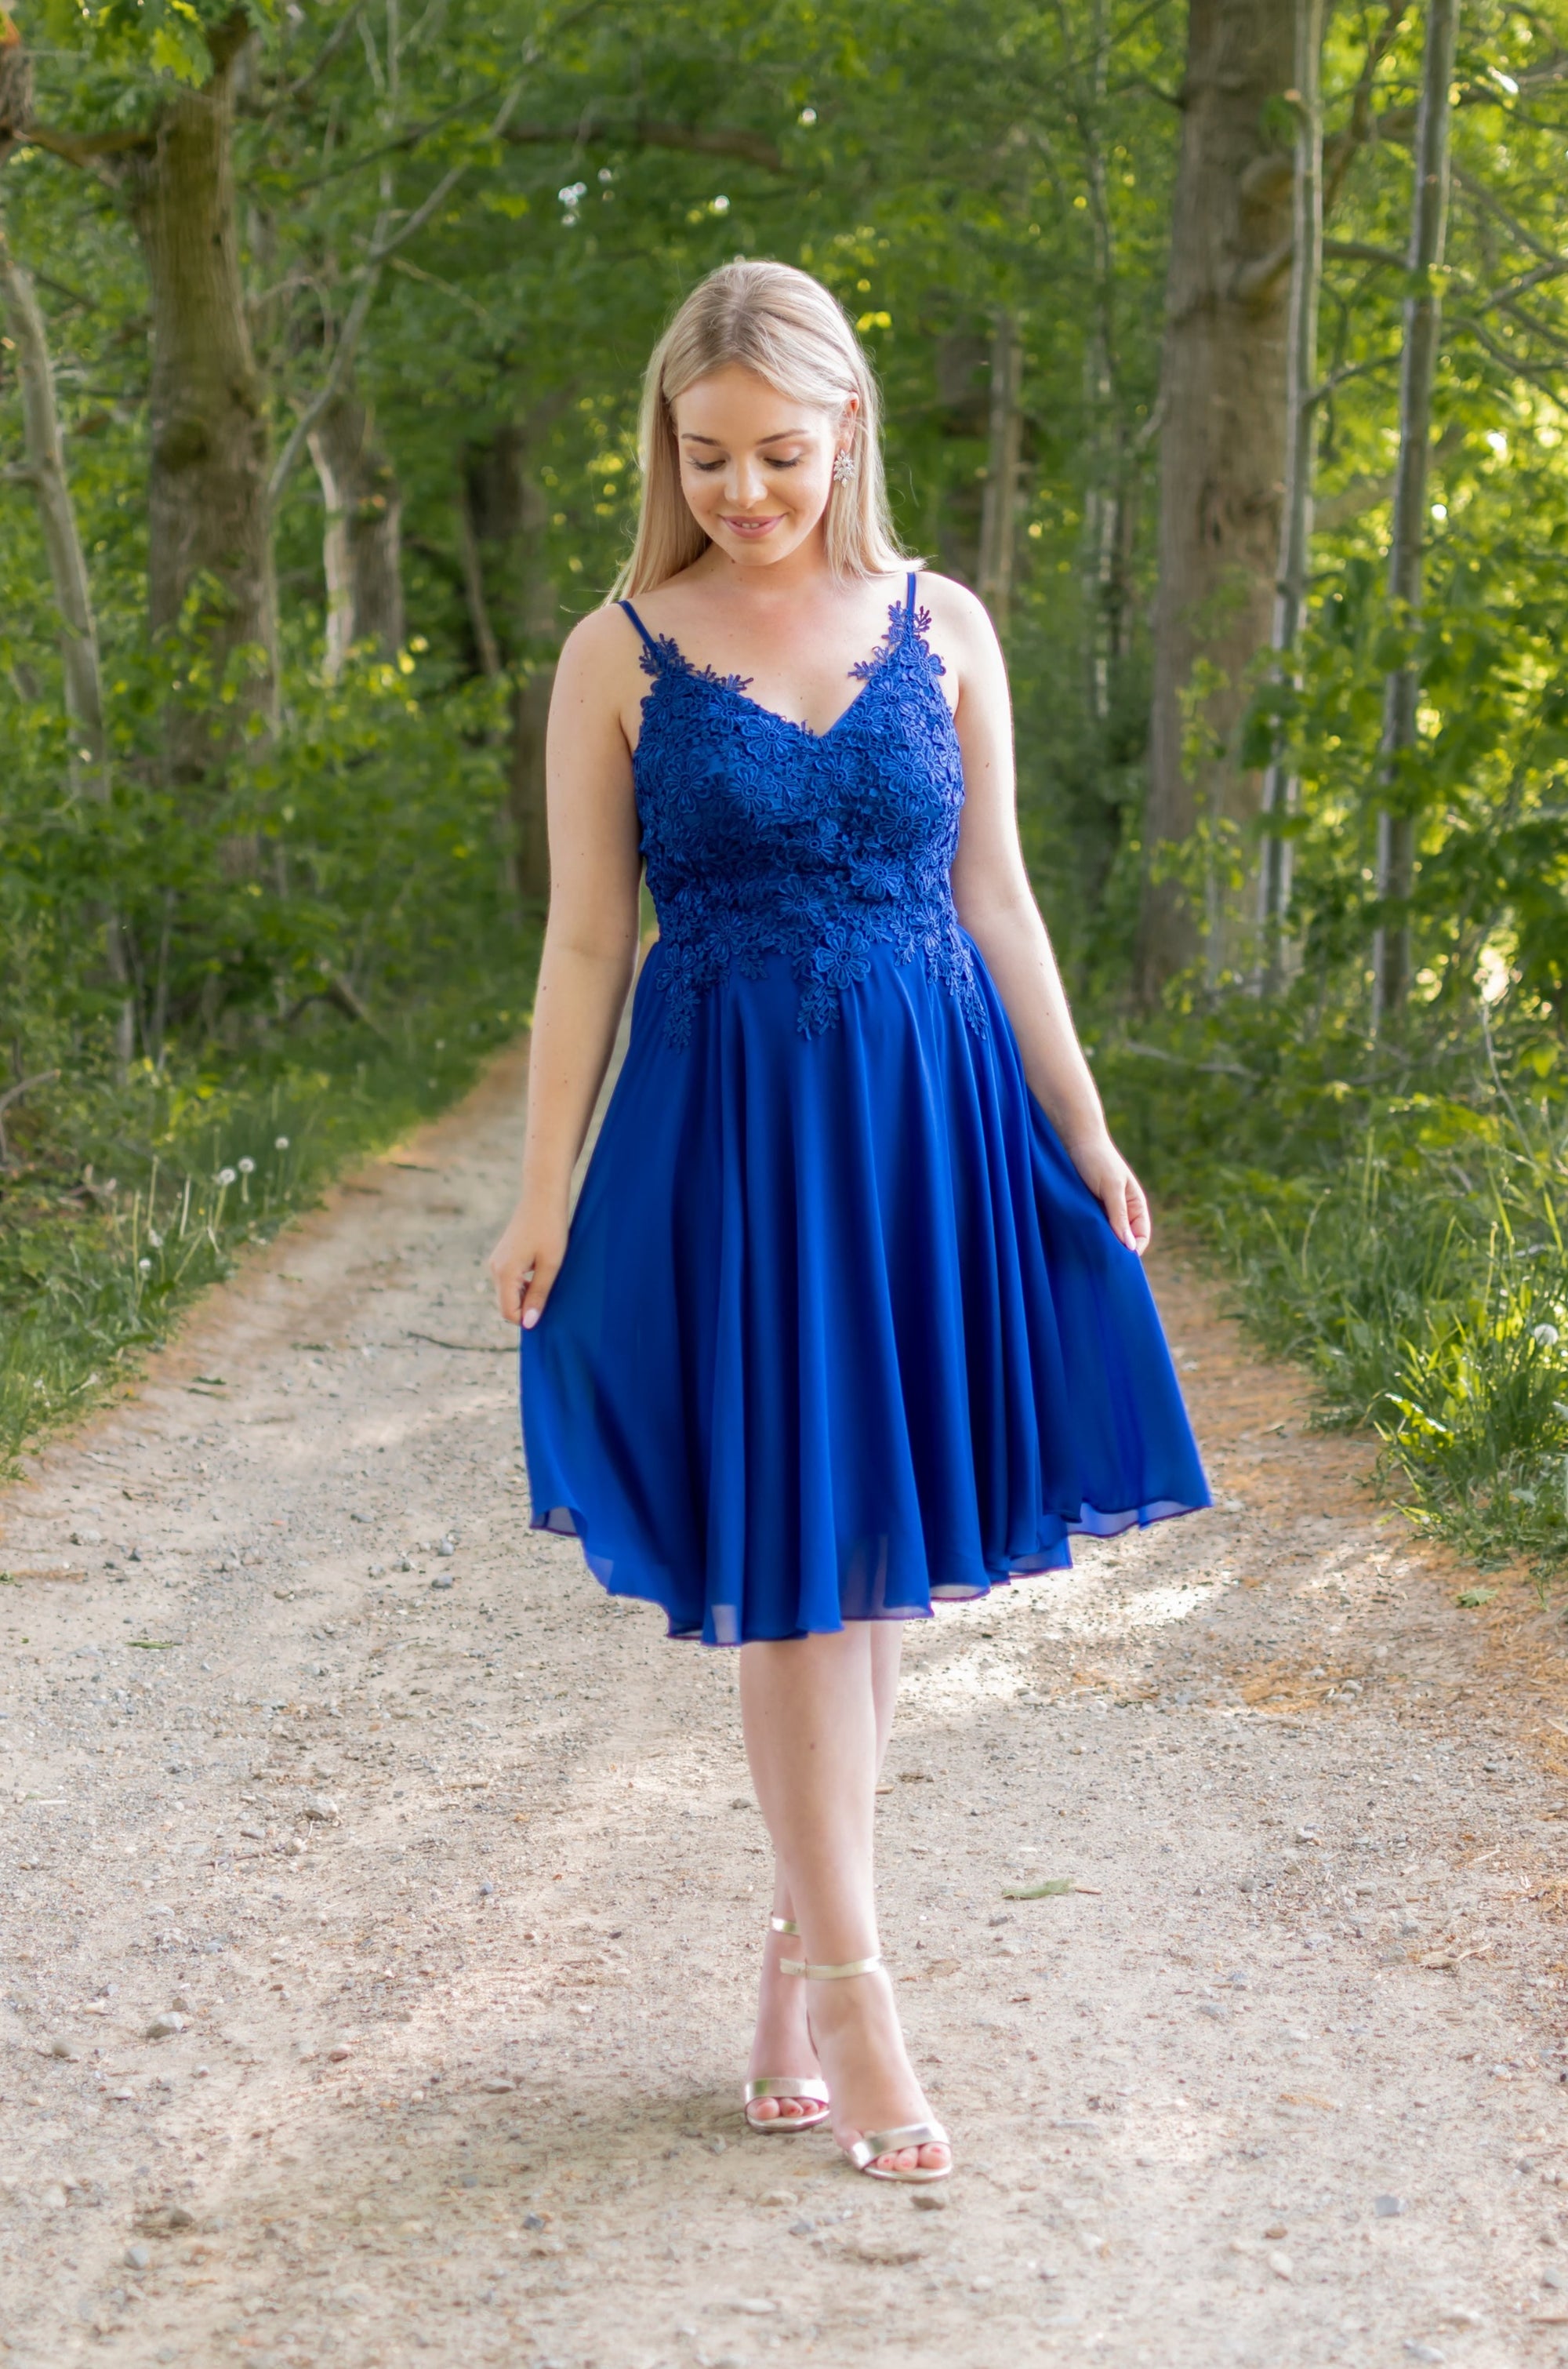 Precious Dress - Bright Blue